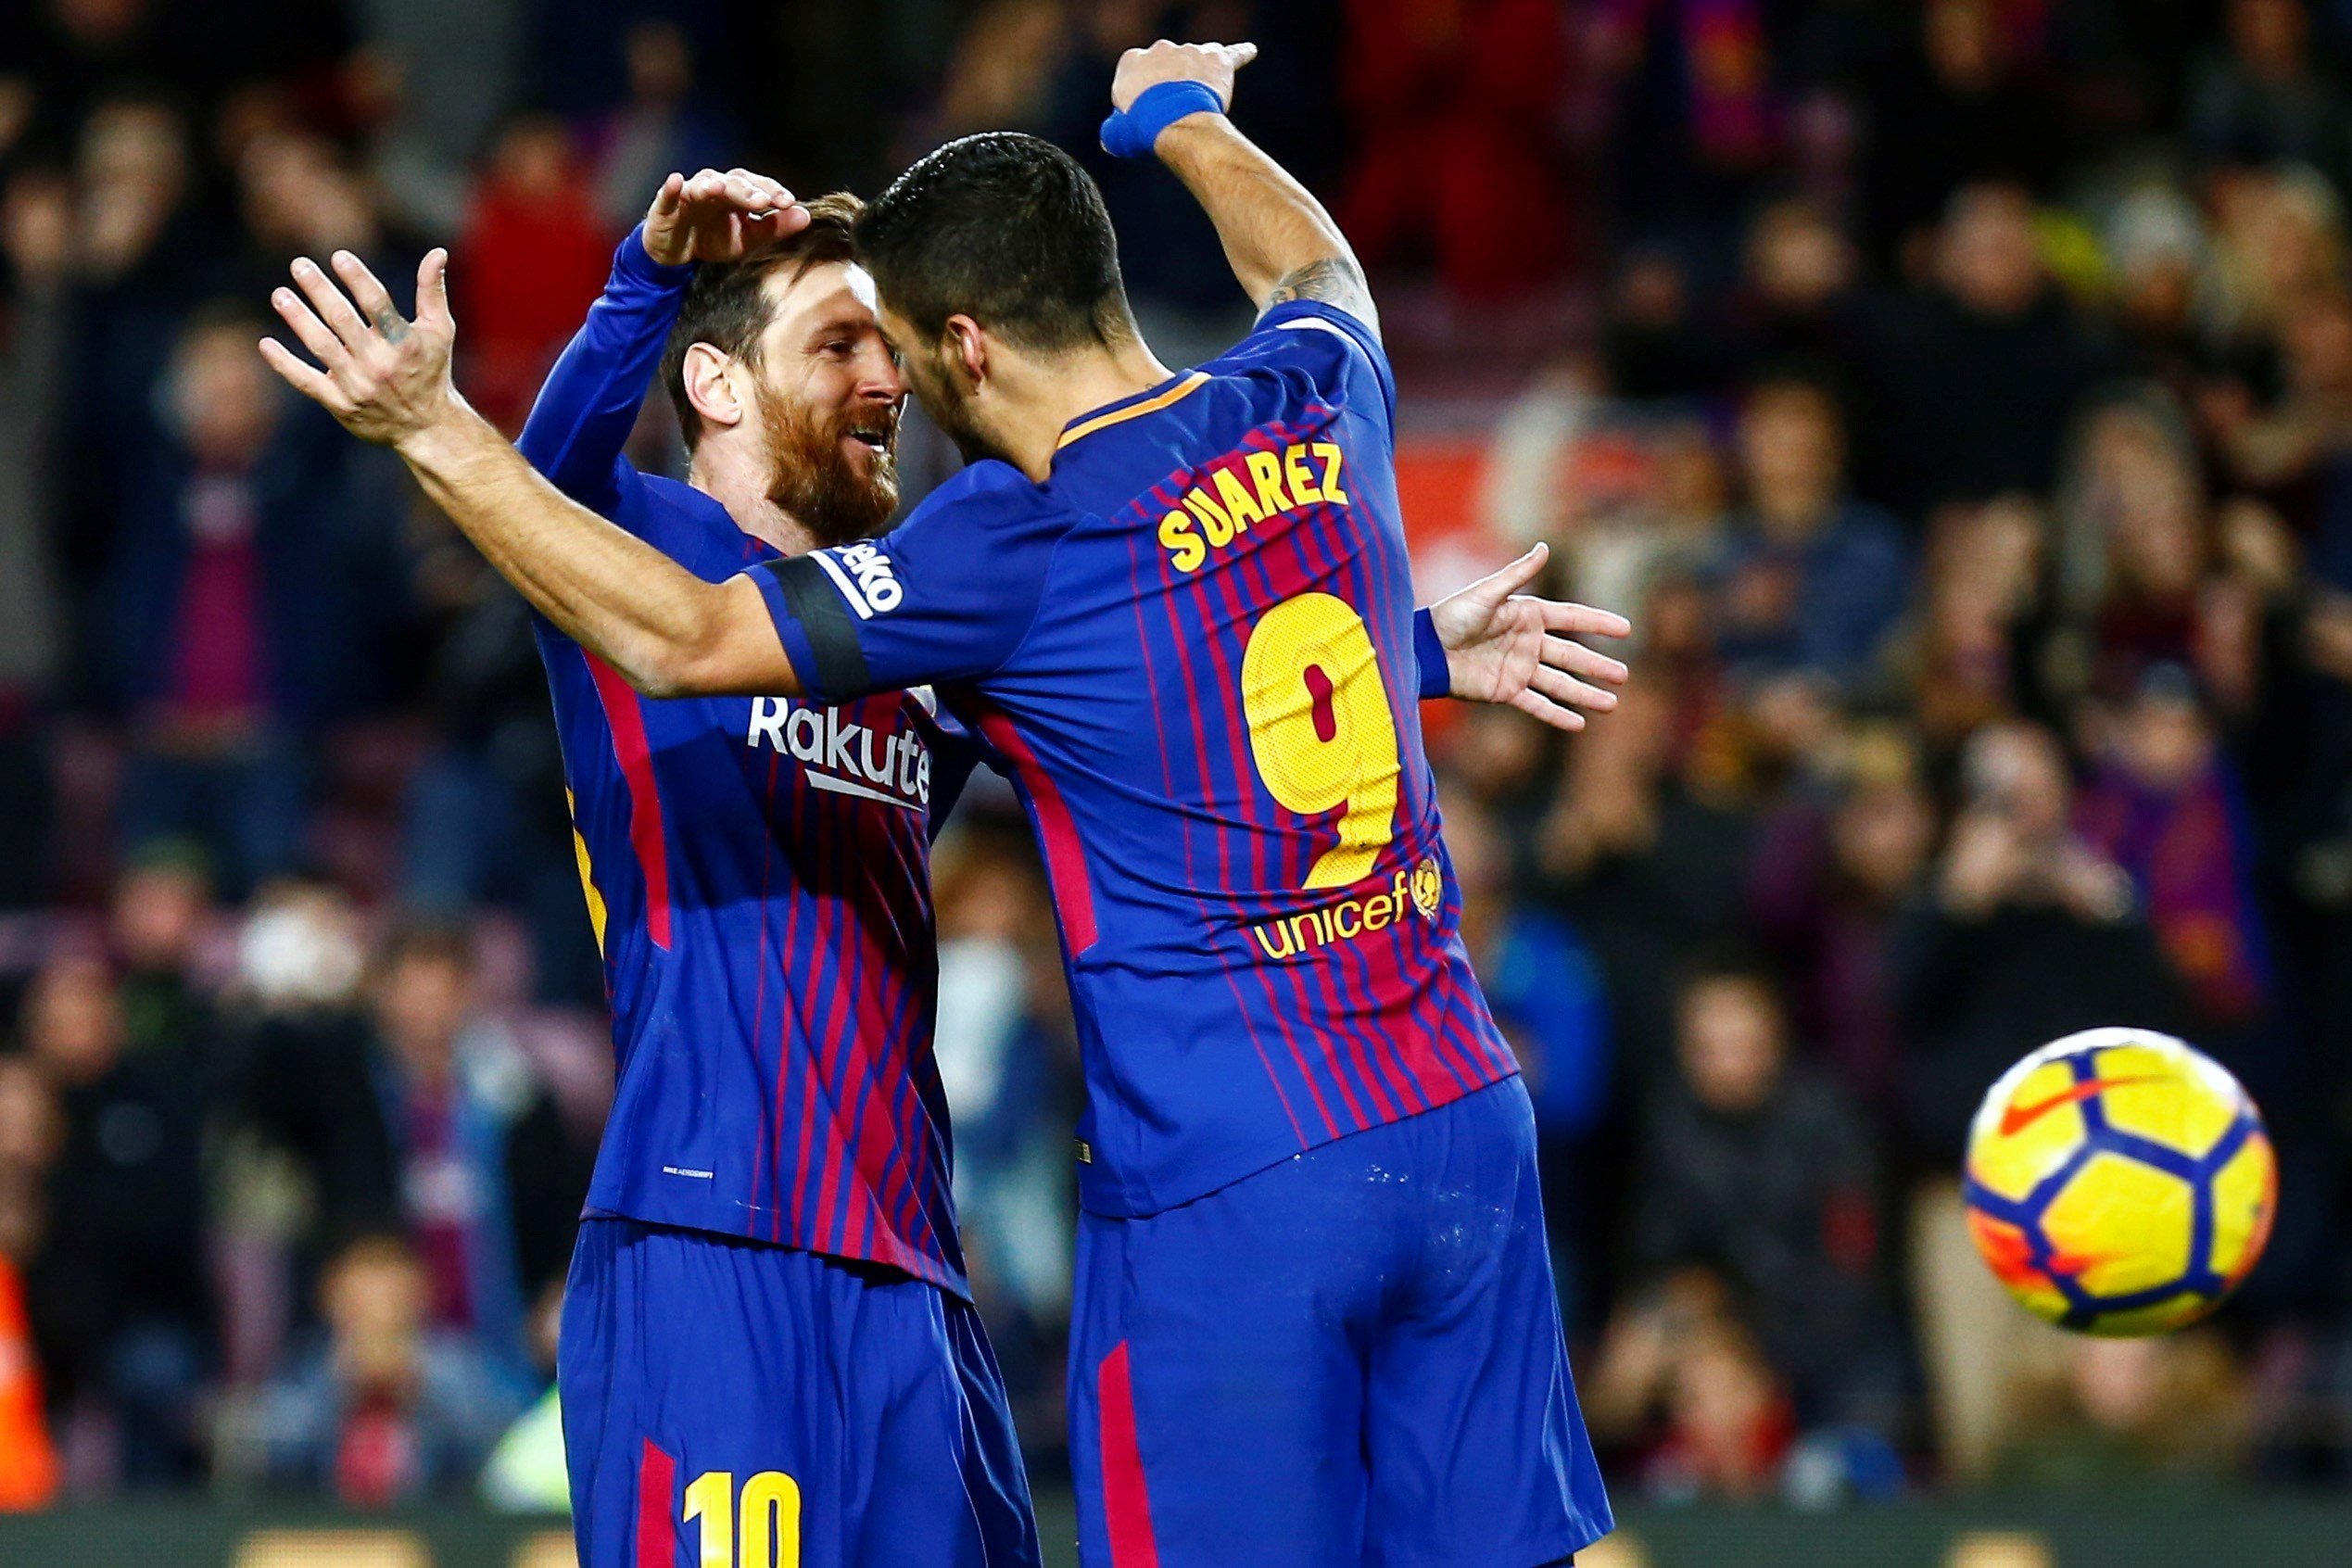 Un anunci 'trenca' l'amistat entre Messi i Suárez